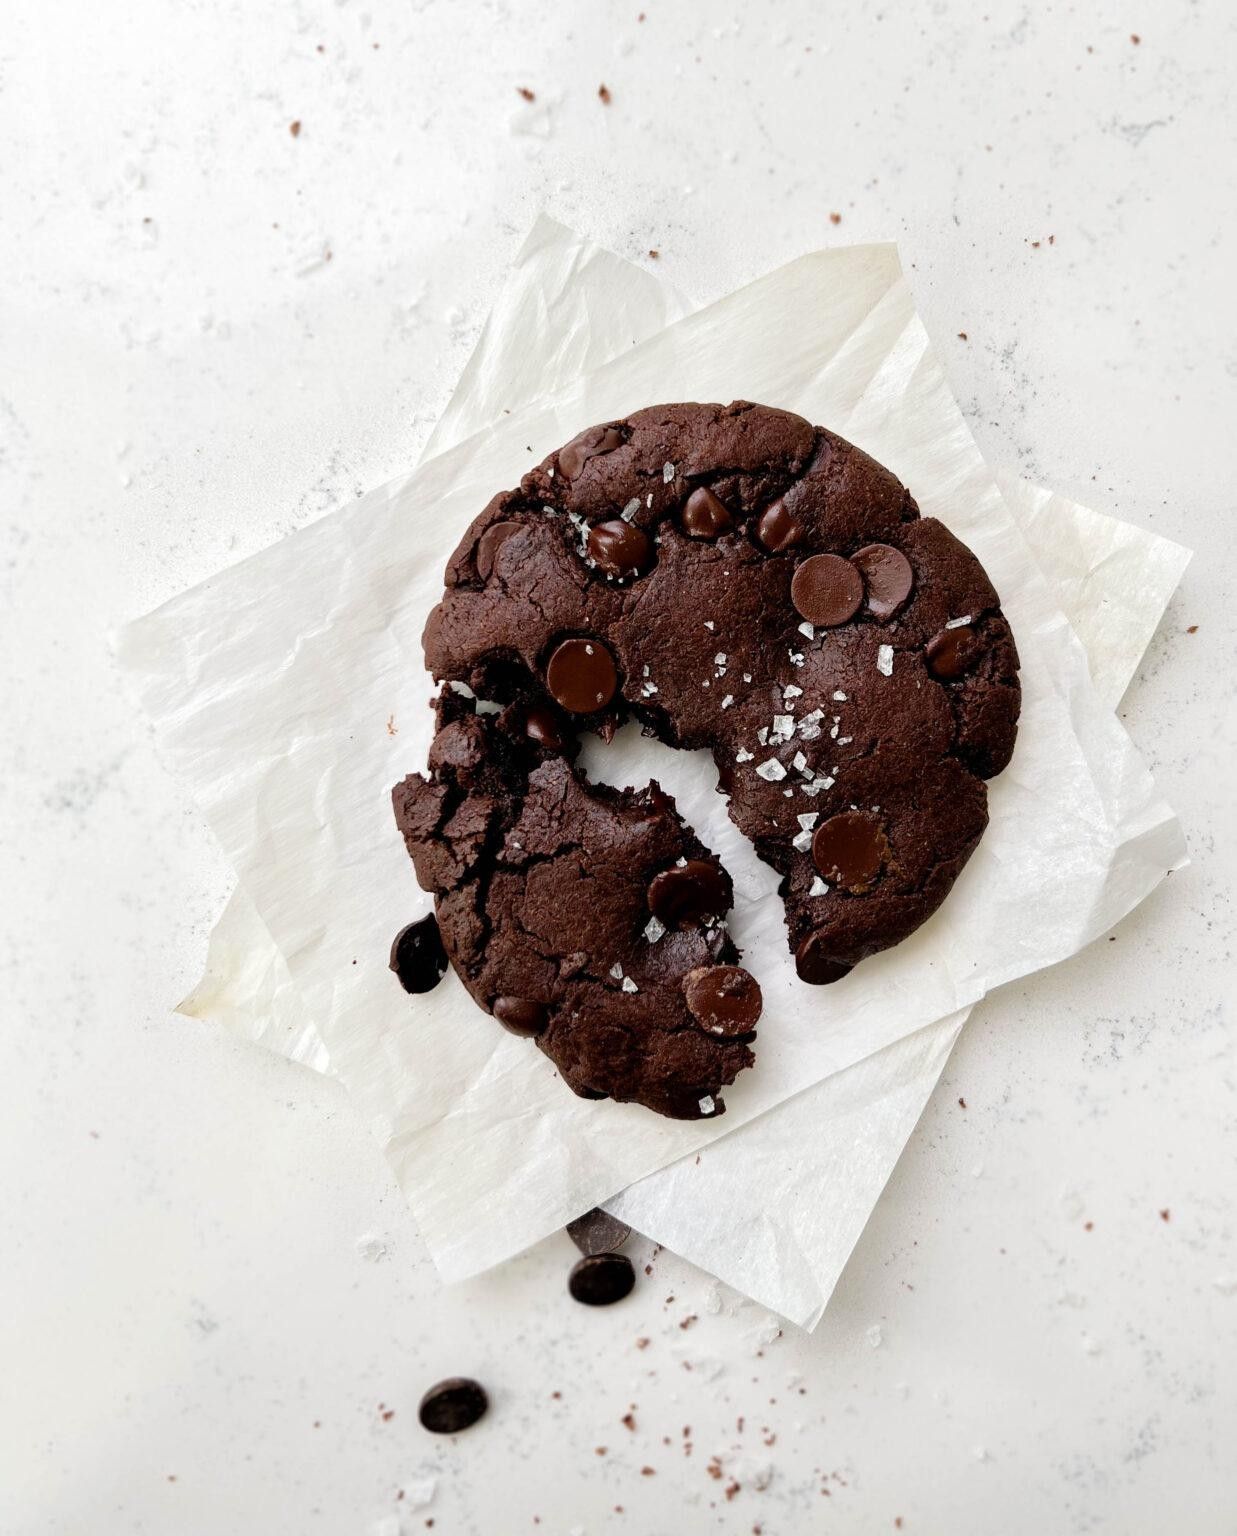 11 Crumbl Cookies Copycat Recipes - Brit + Co